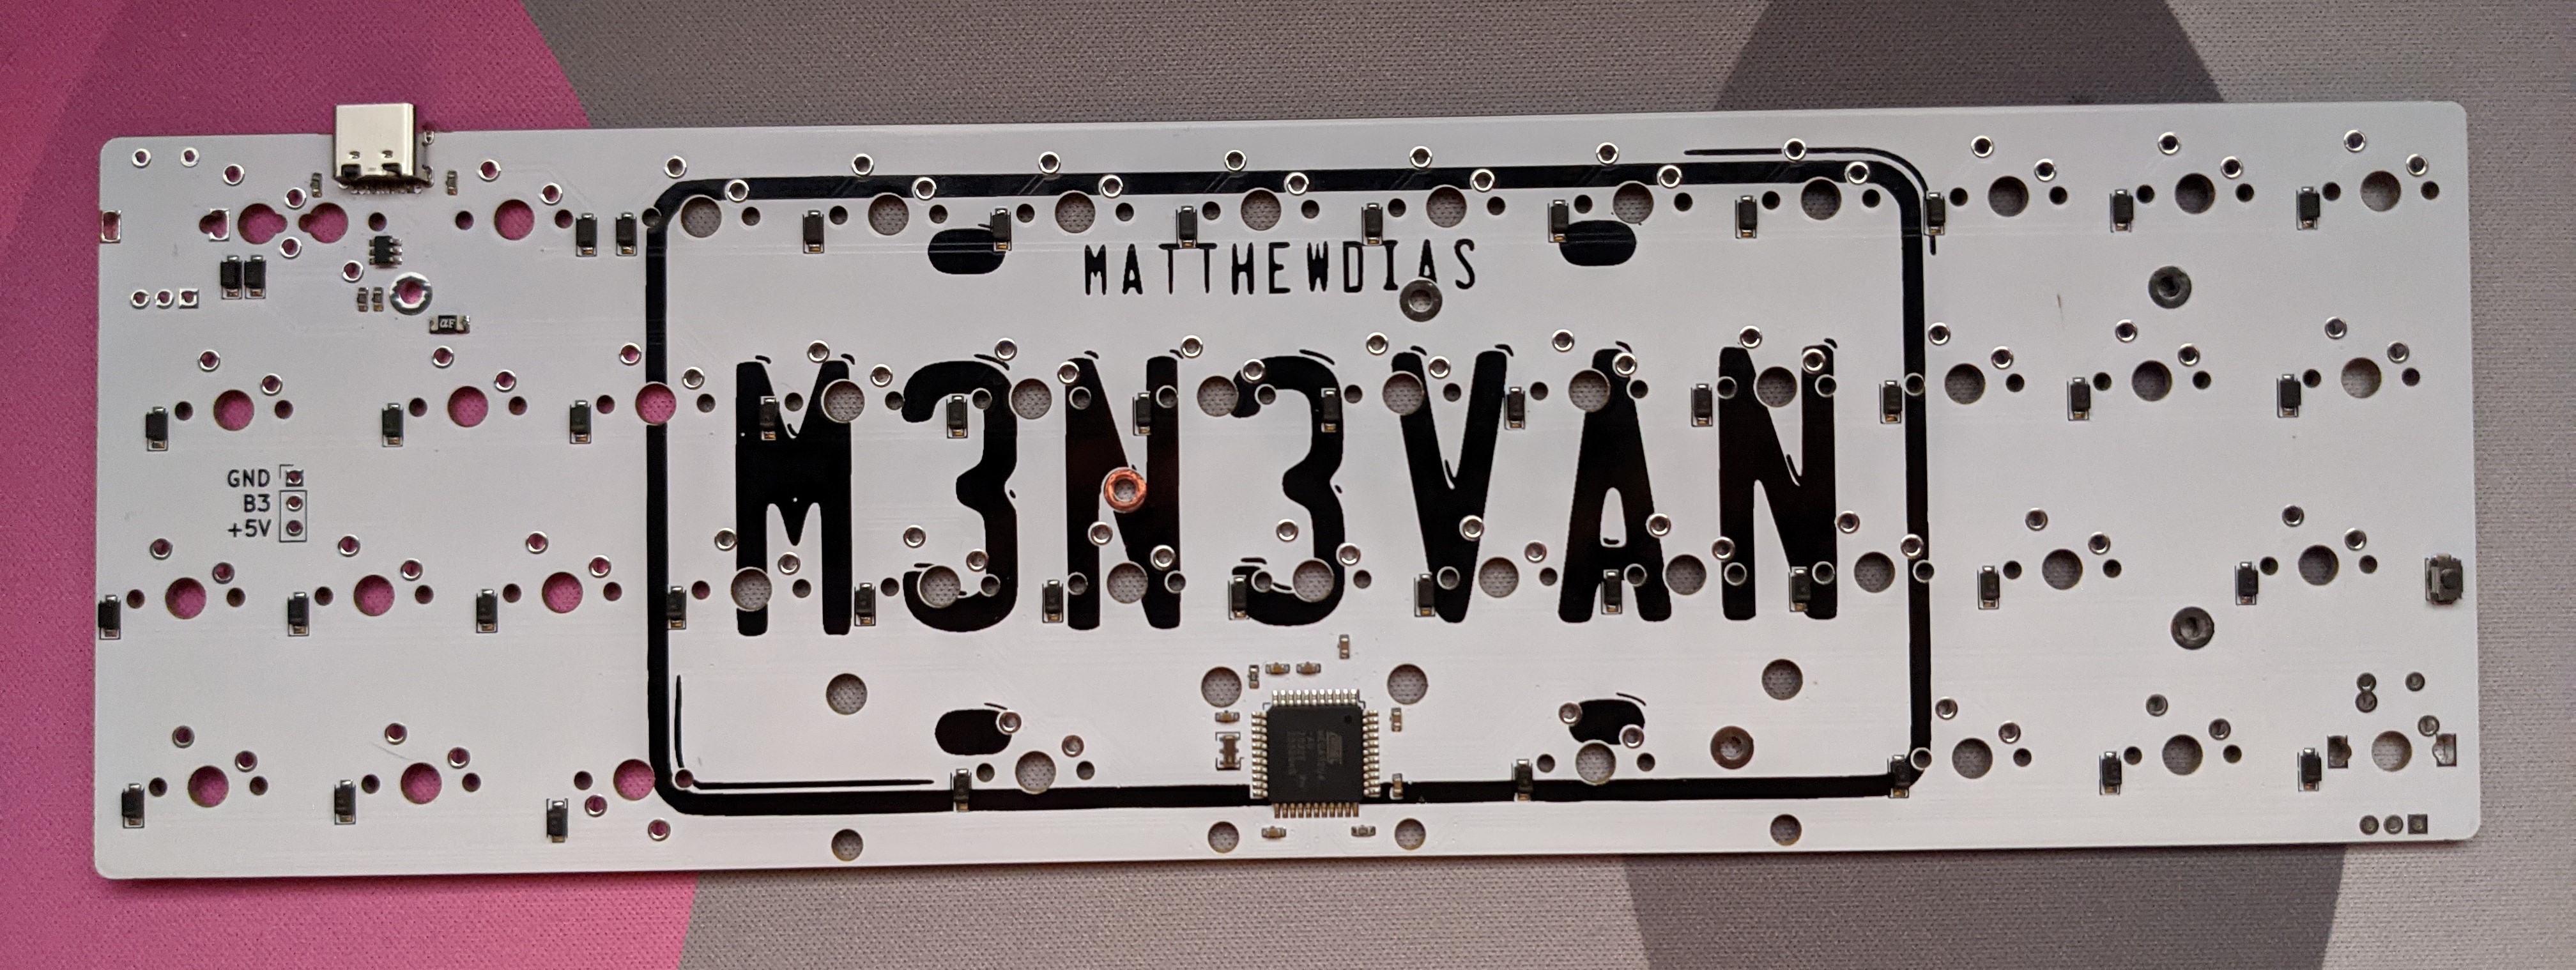 Back of the m3n3van rev2 PCB